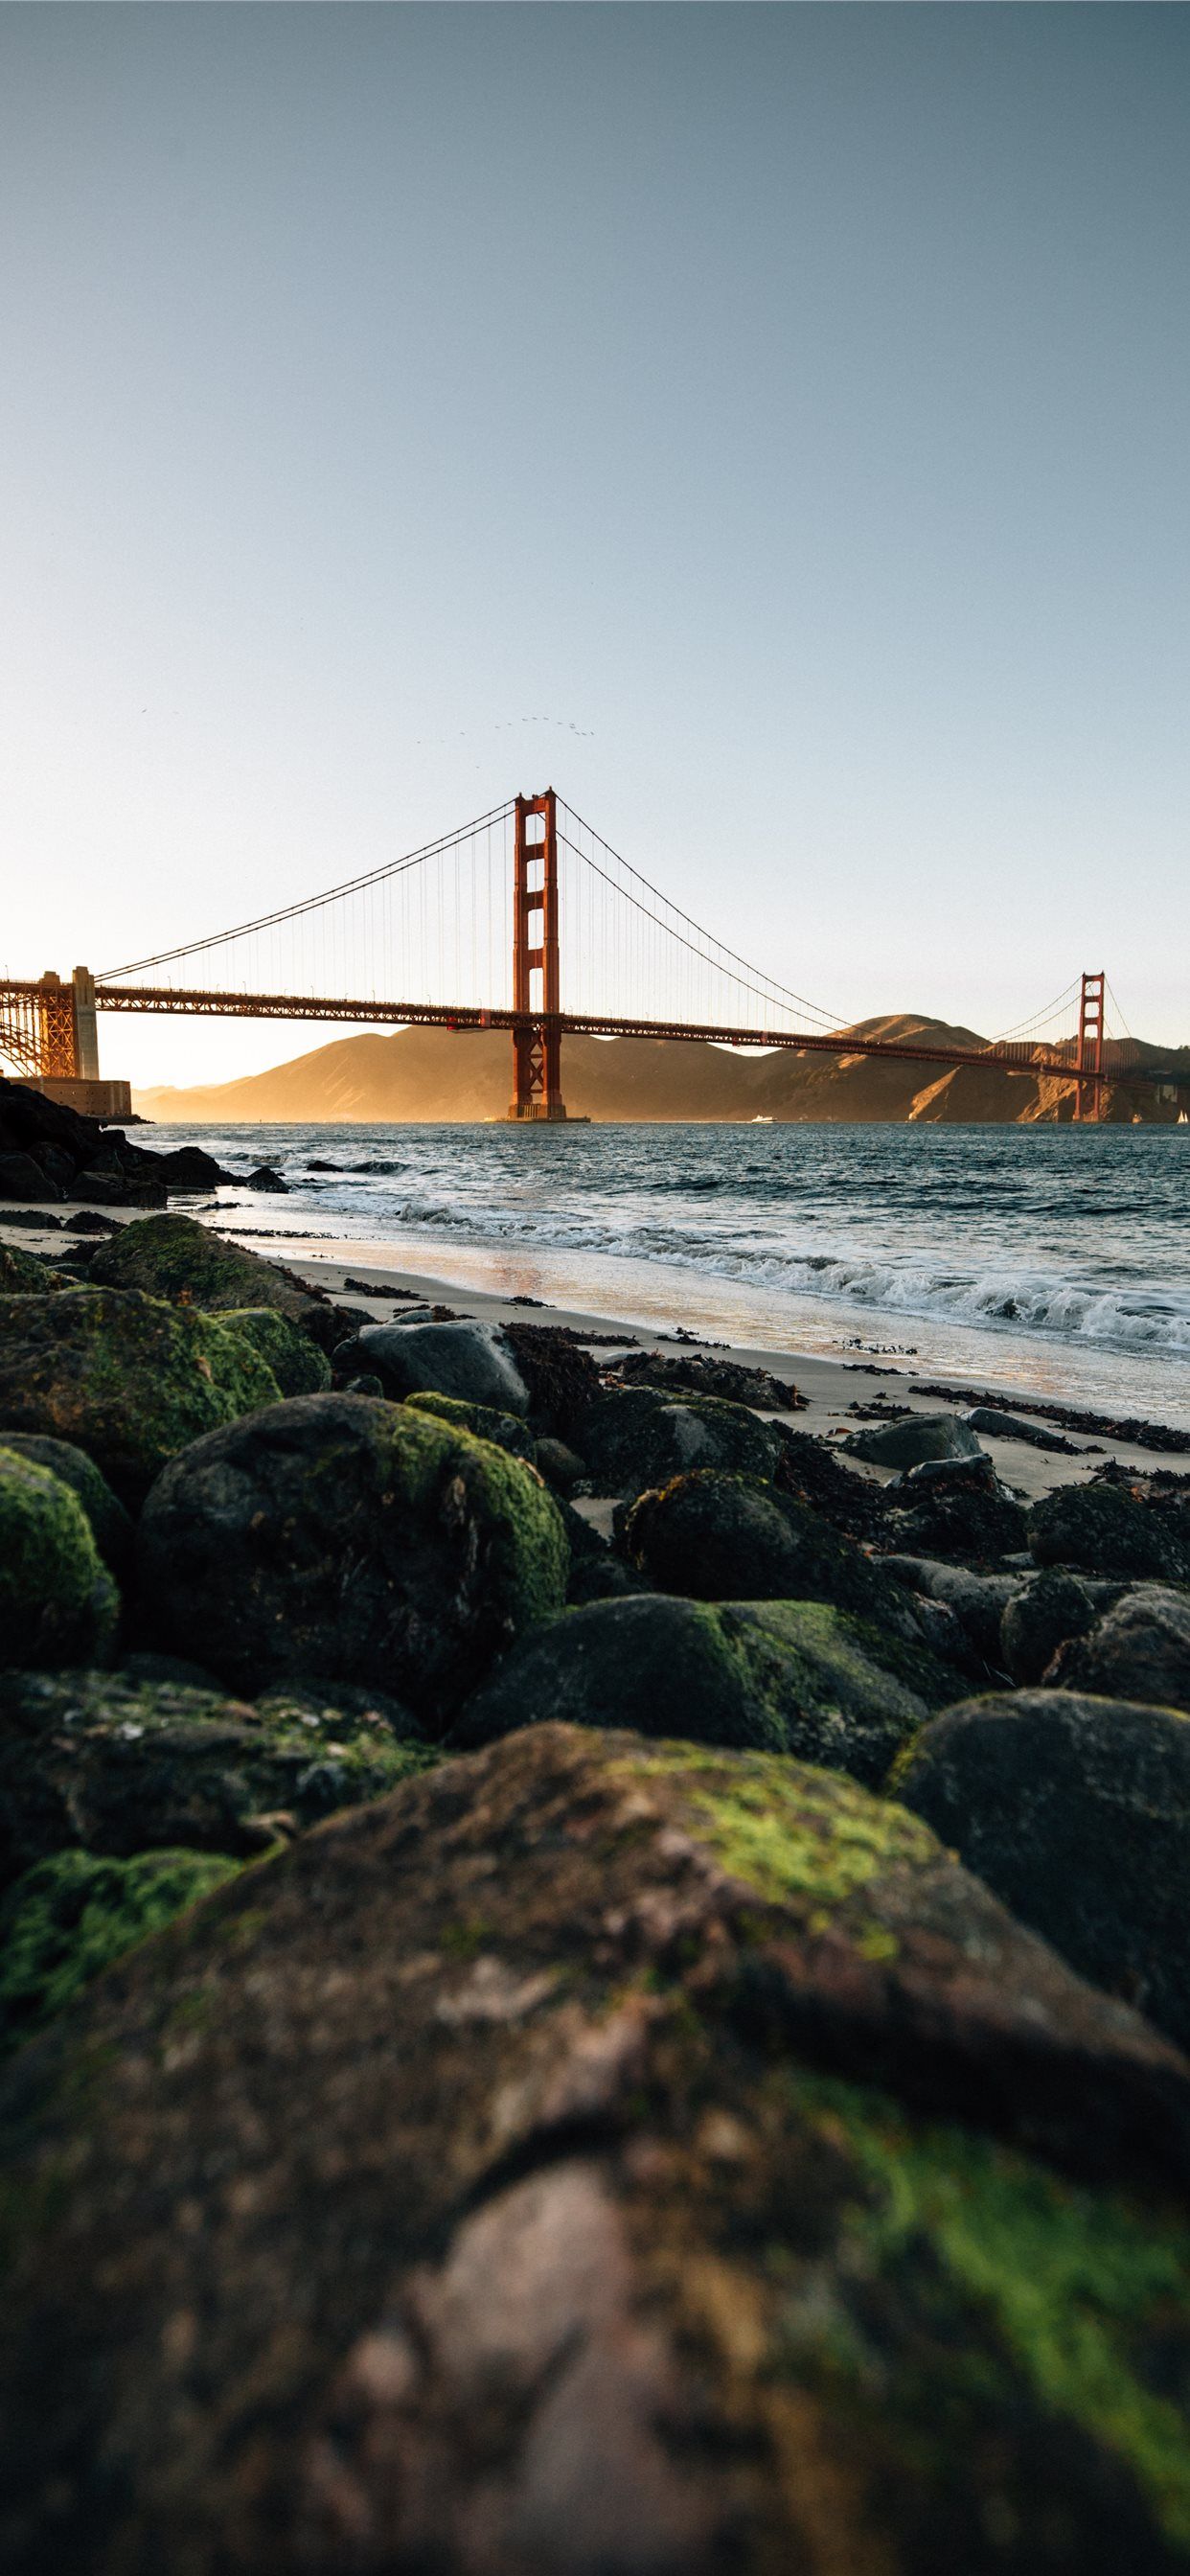 Golden Gate Bridge San Francisco at daytime iPhone Wallpaper Free